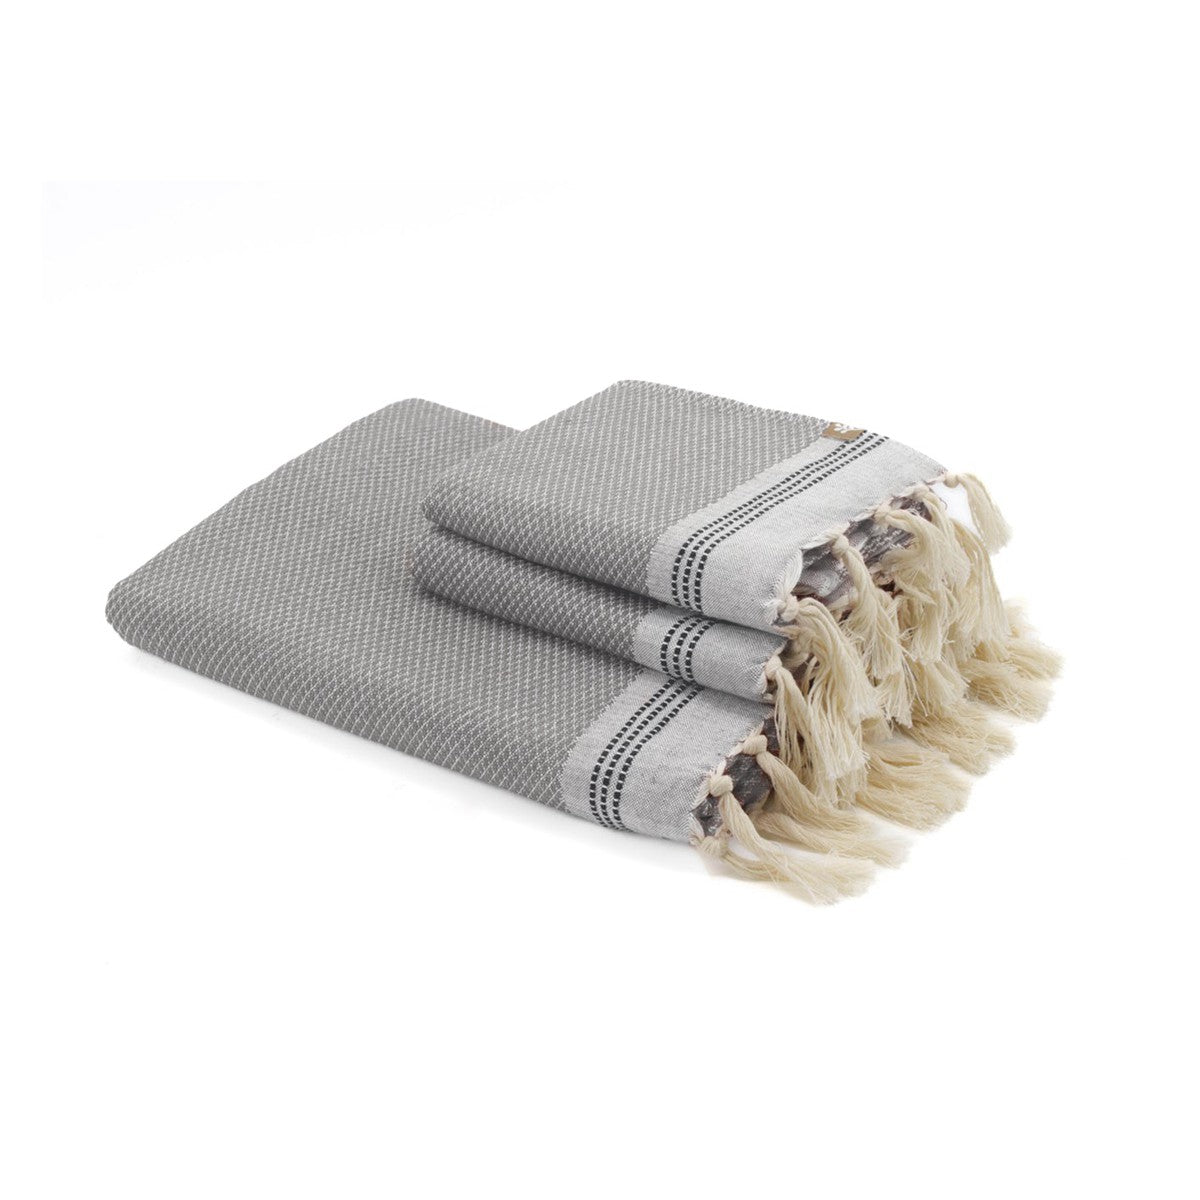 set 1 fouta + 2 serviettes coton  100x200 + 50x80 (x2) gris clair